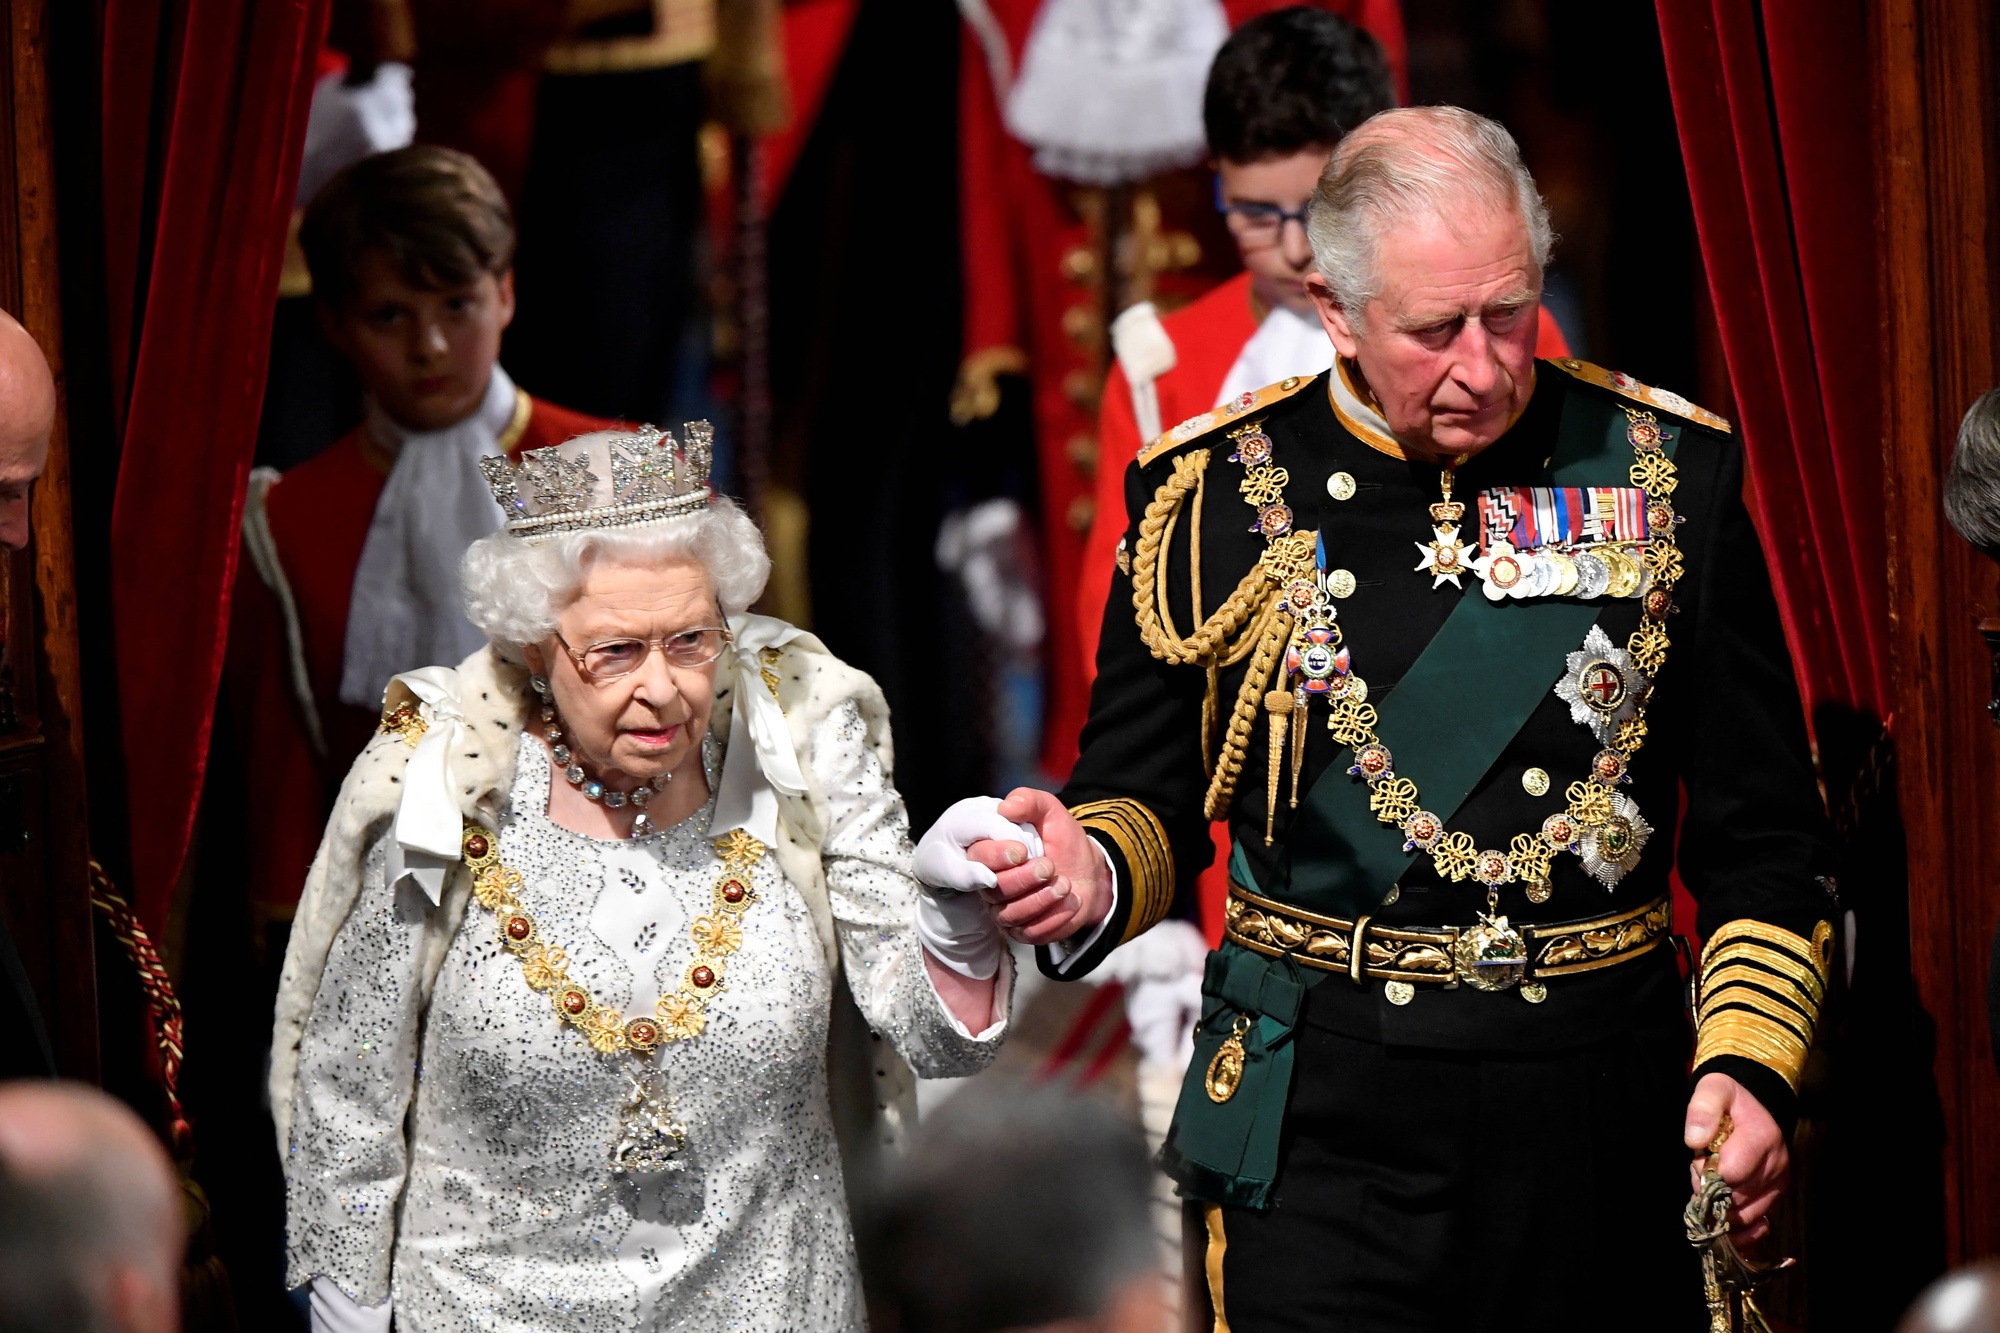 Mọi ánh mắt đổ dồn vào người kế nhiệm Nữ hoàng Elizabeth II - Ảnh 2.